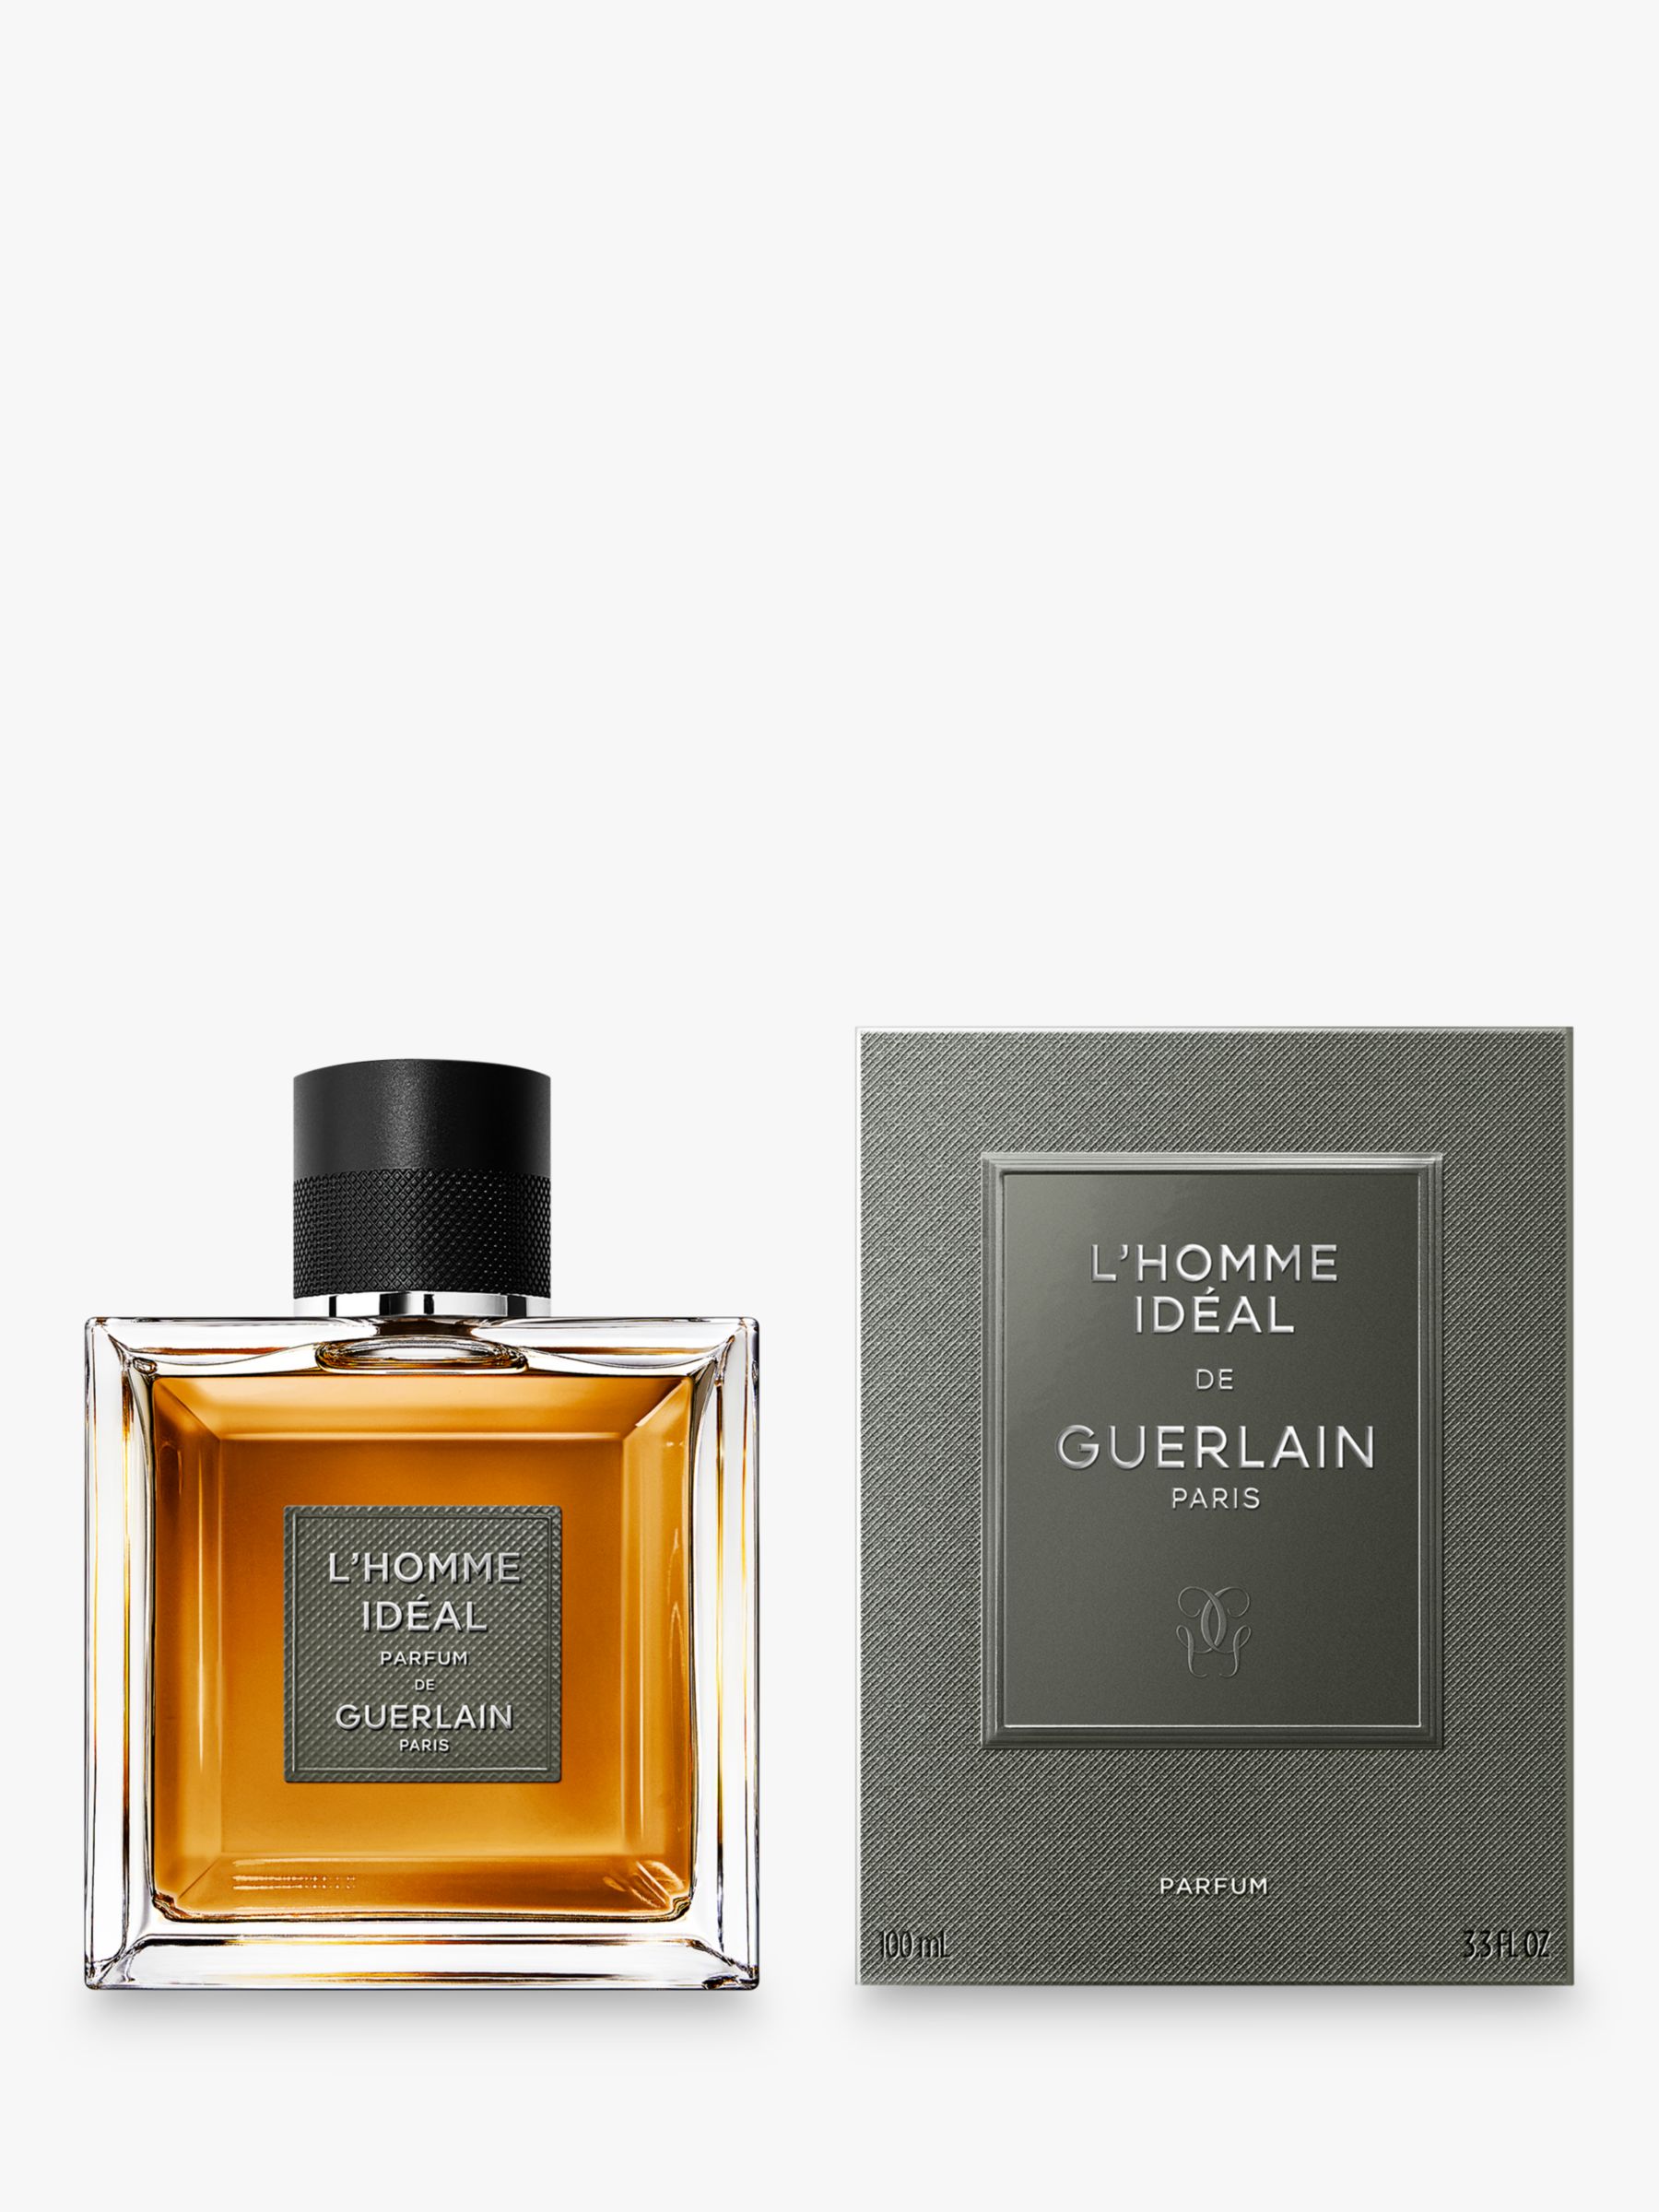 Guerlain L'Homme Idéal Le Parfum, 100ml 2